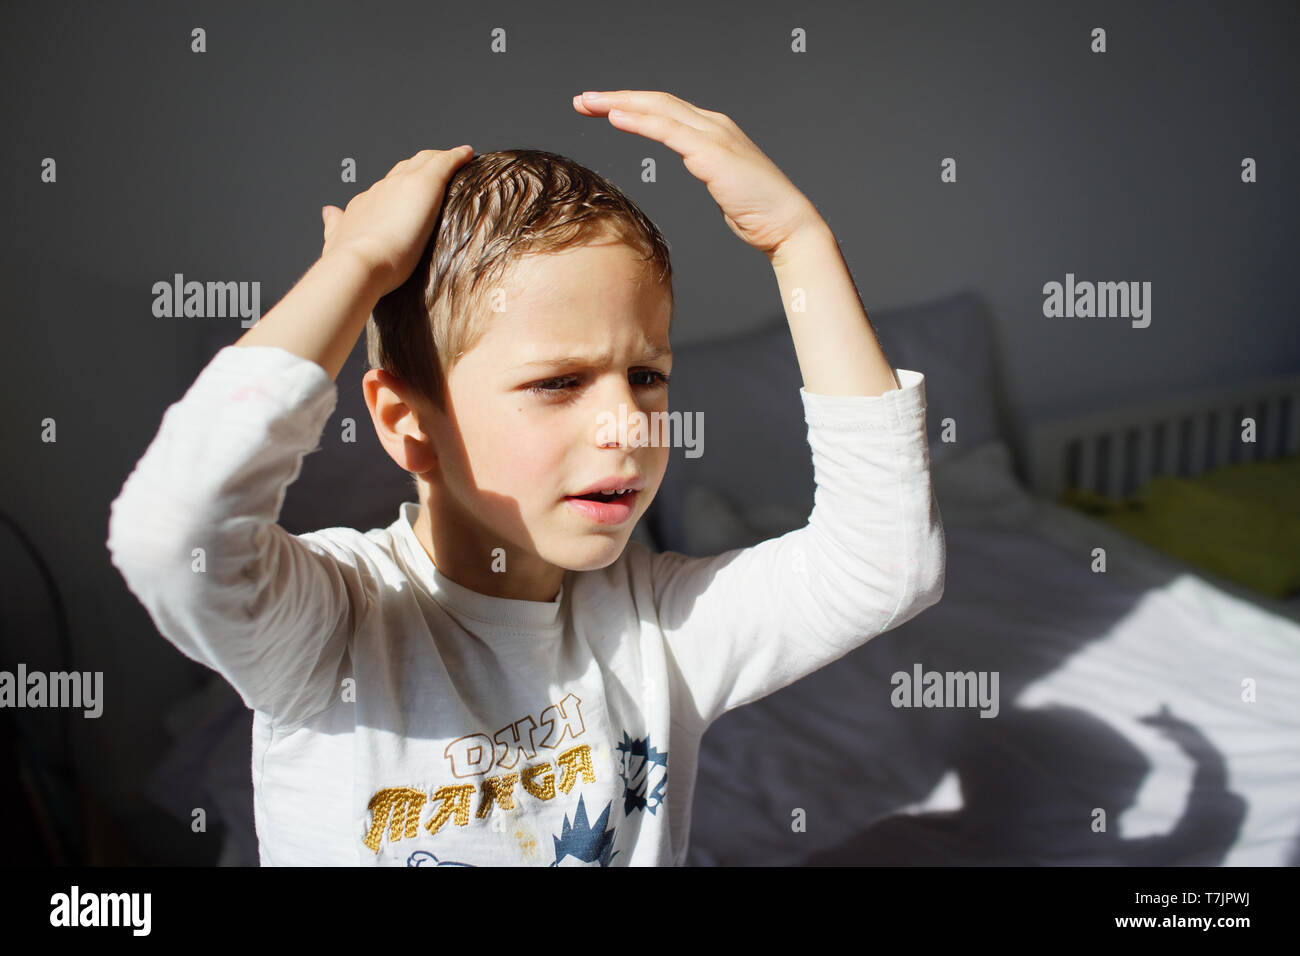 Junge männliche Kind Haar im Spiegel - Junge von 5, 6 Jahre alt Stockfoto